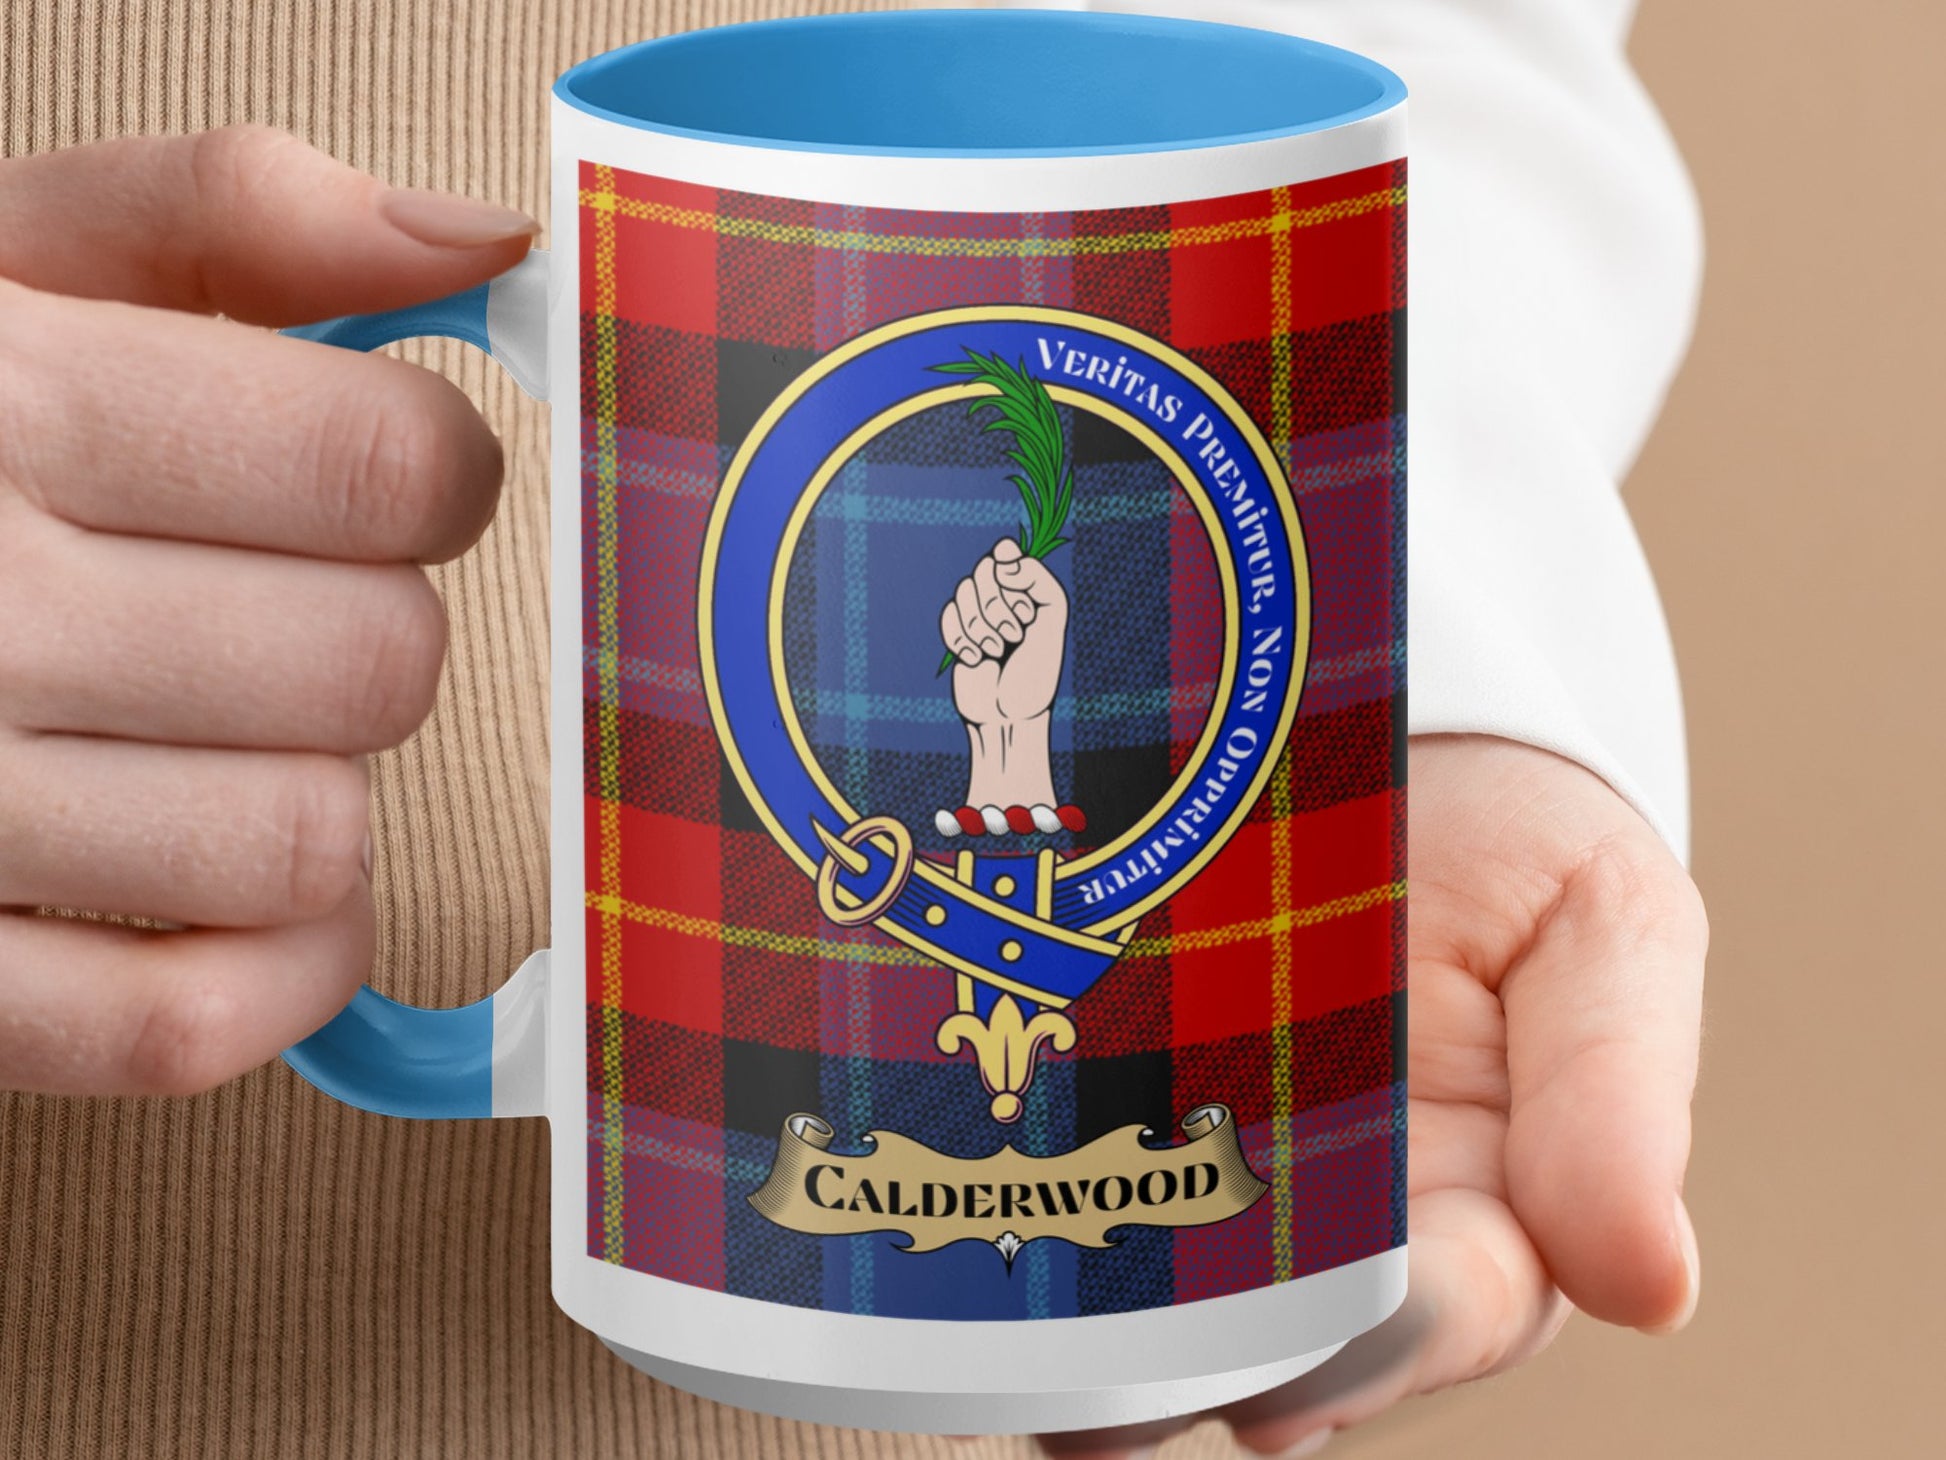 Clan Calderwood Scottish Tartan Crest Mug - Living Stone Gifts